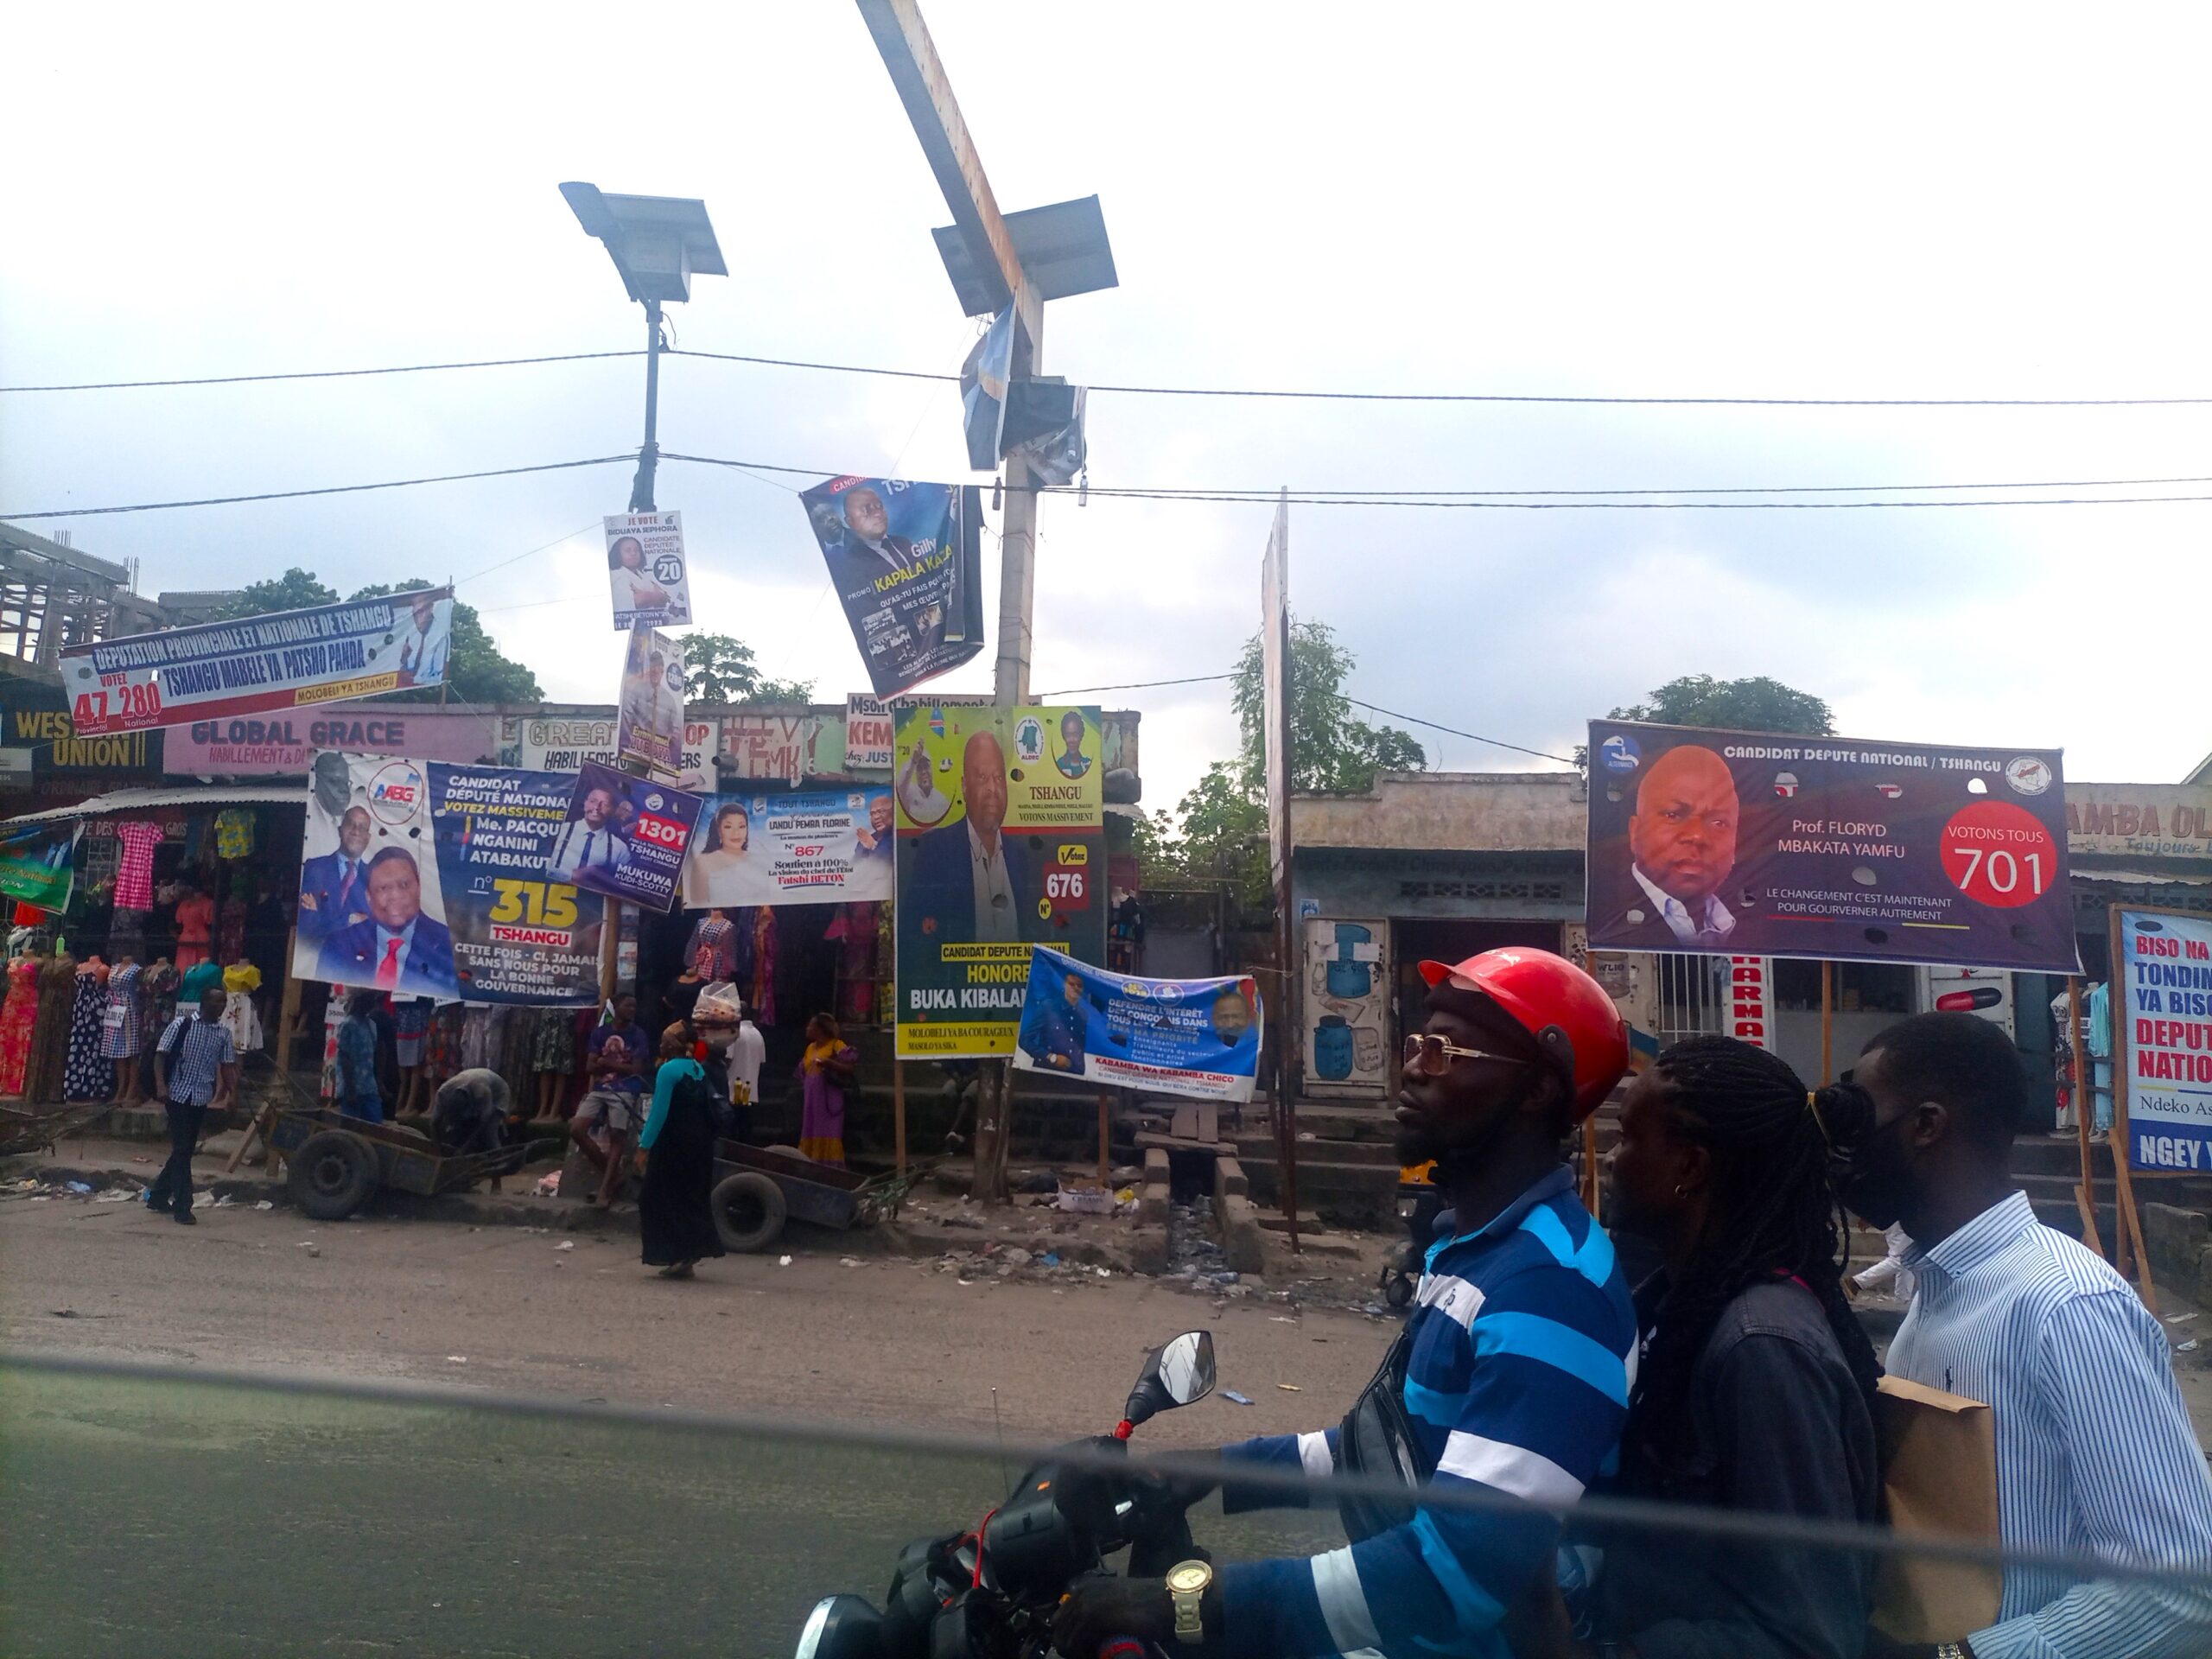 Während der Wahl im Kongo Strasse in Kinshasa